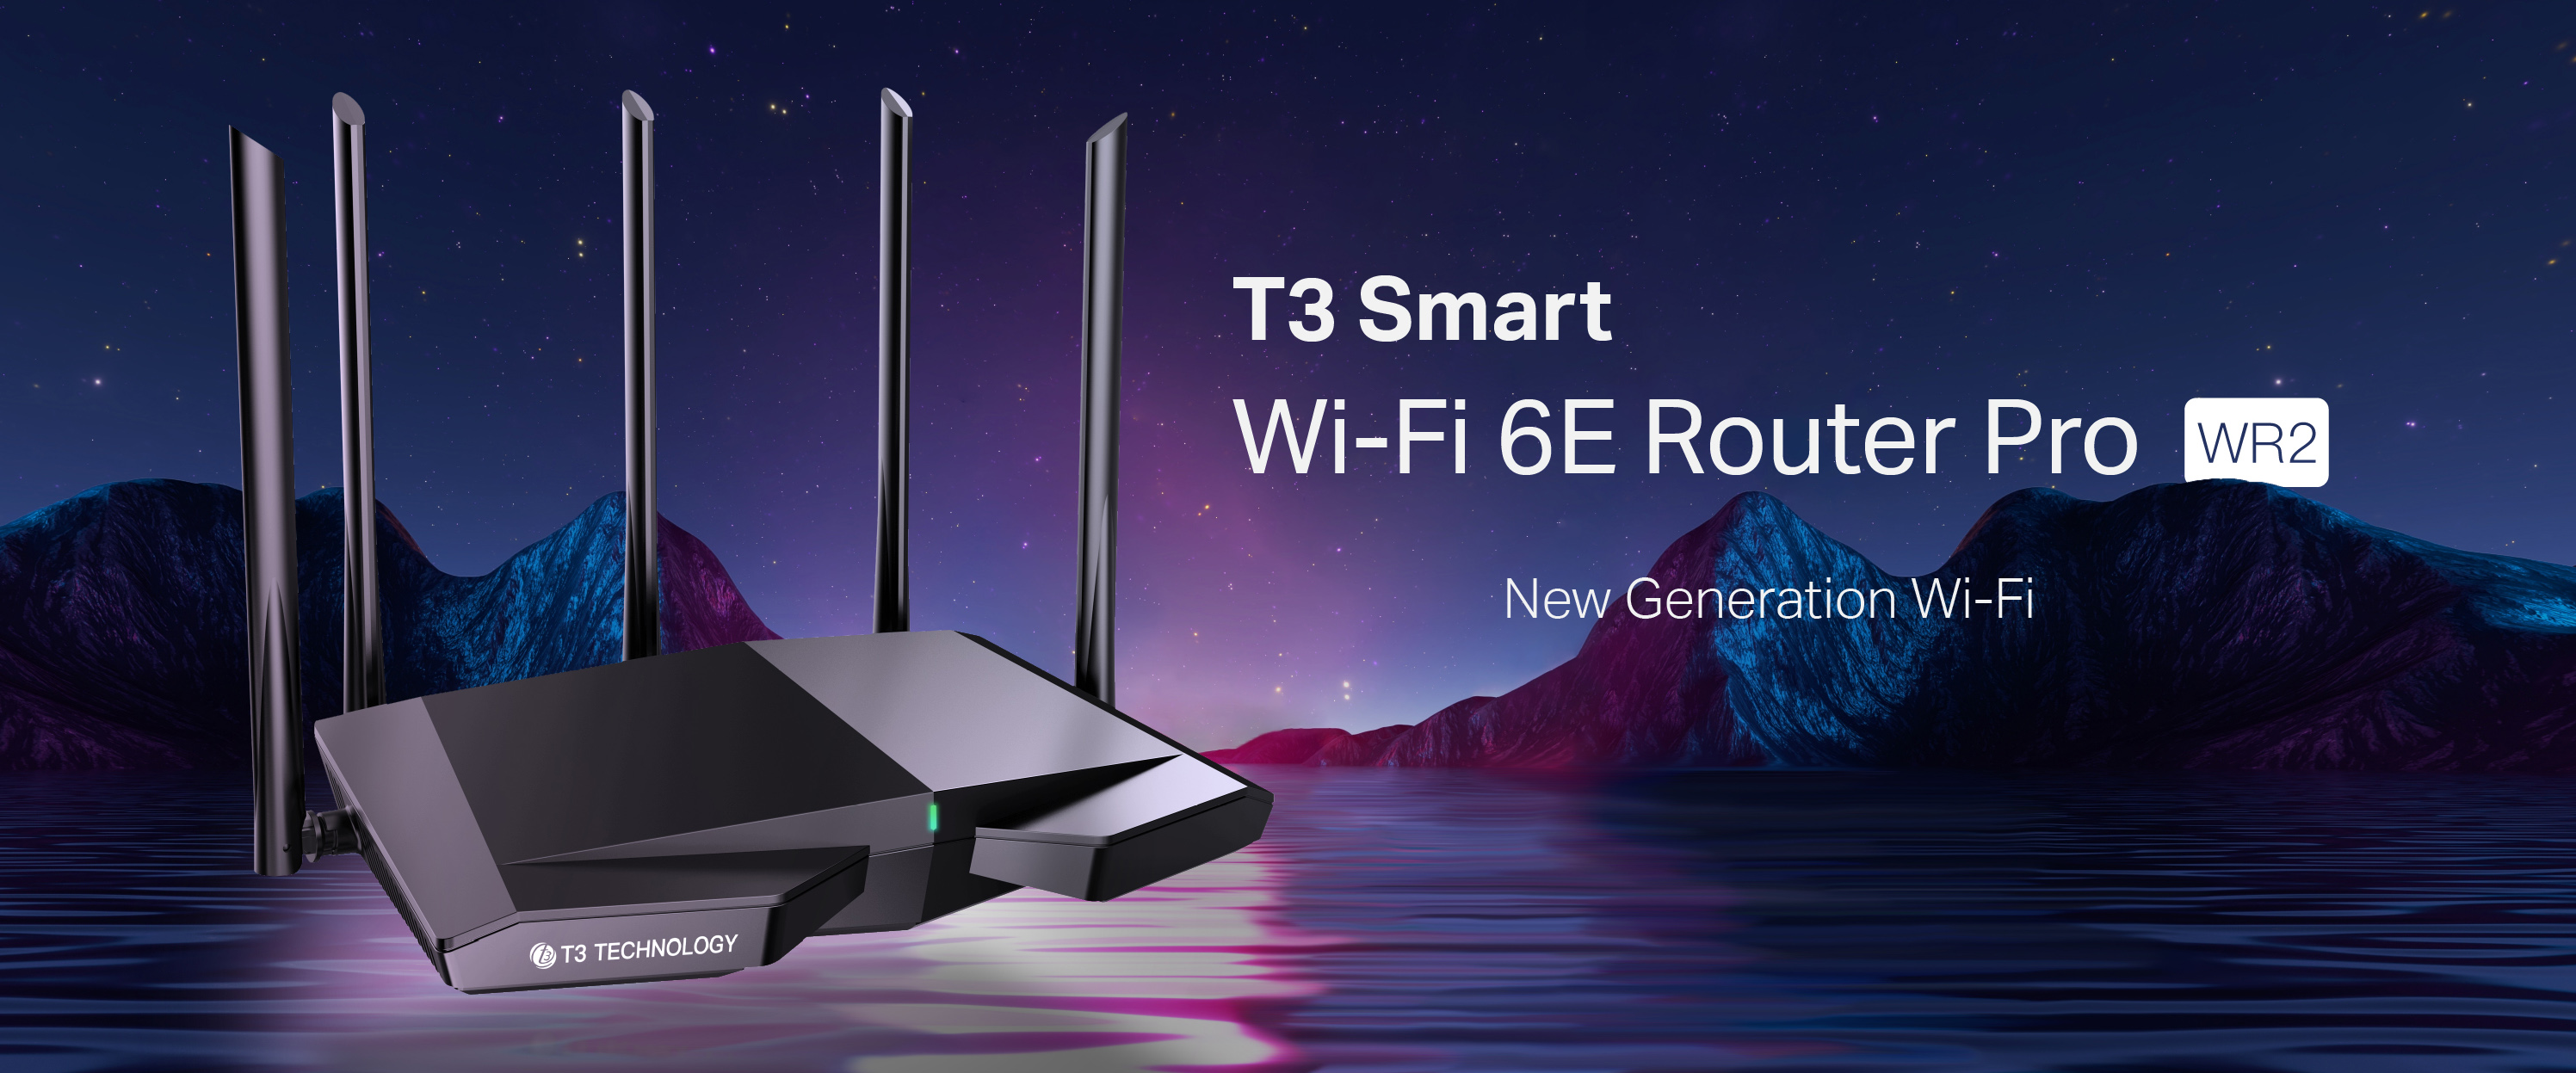 T3 Smart Wi-Fi 6E Router Pro WR2